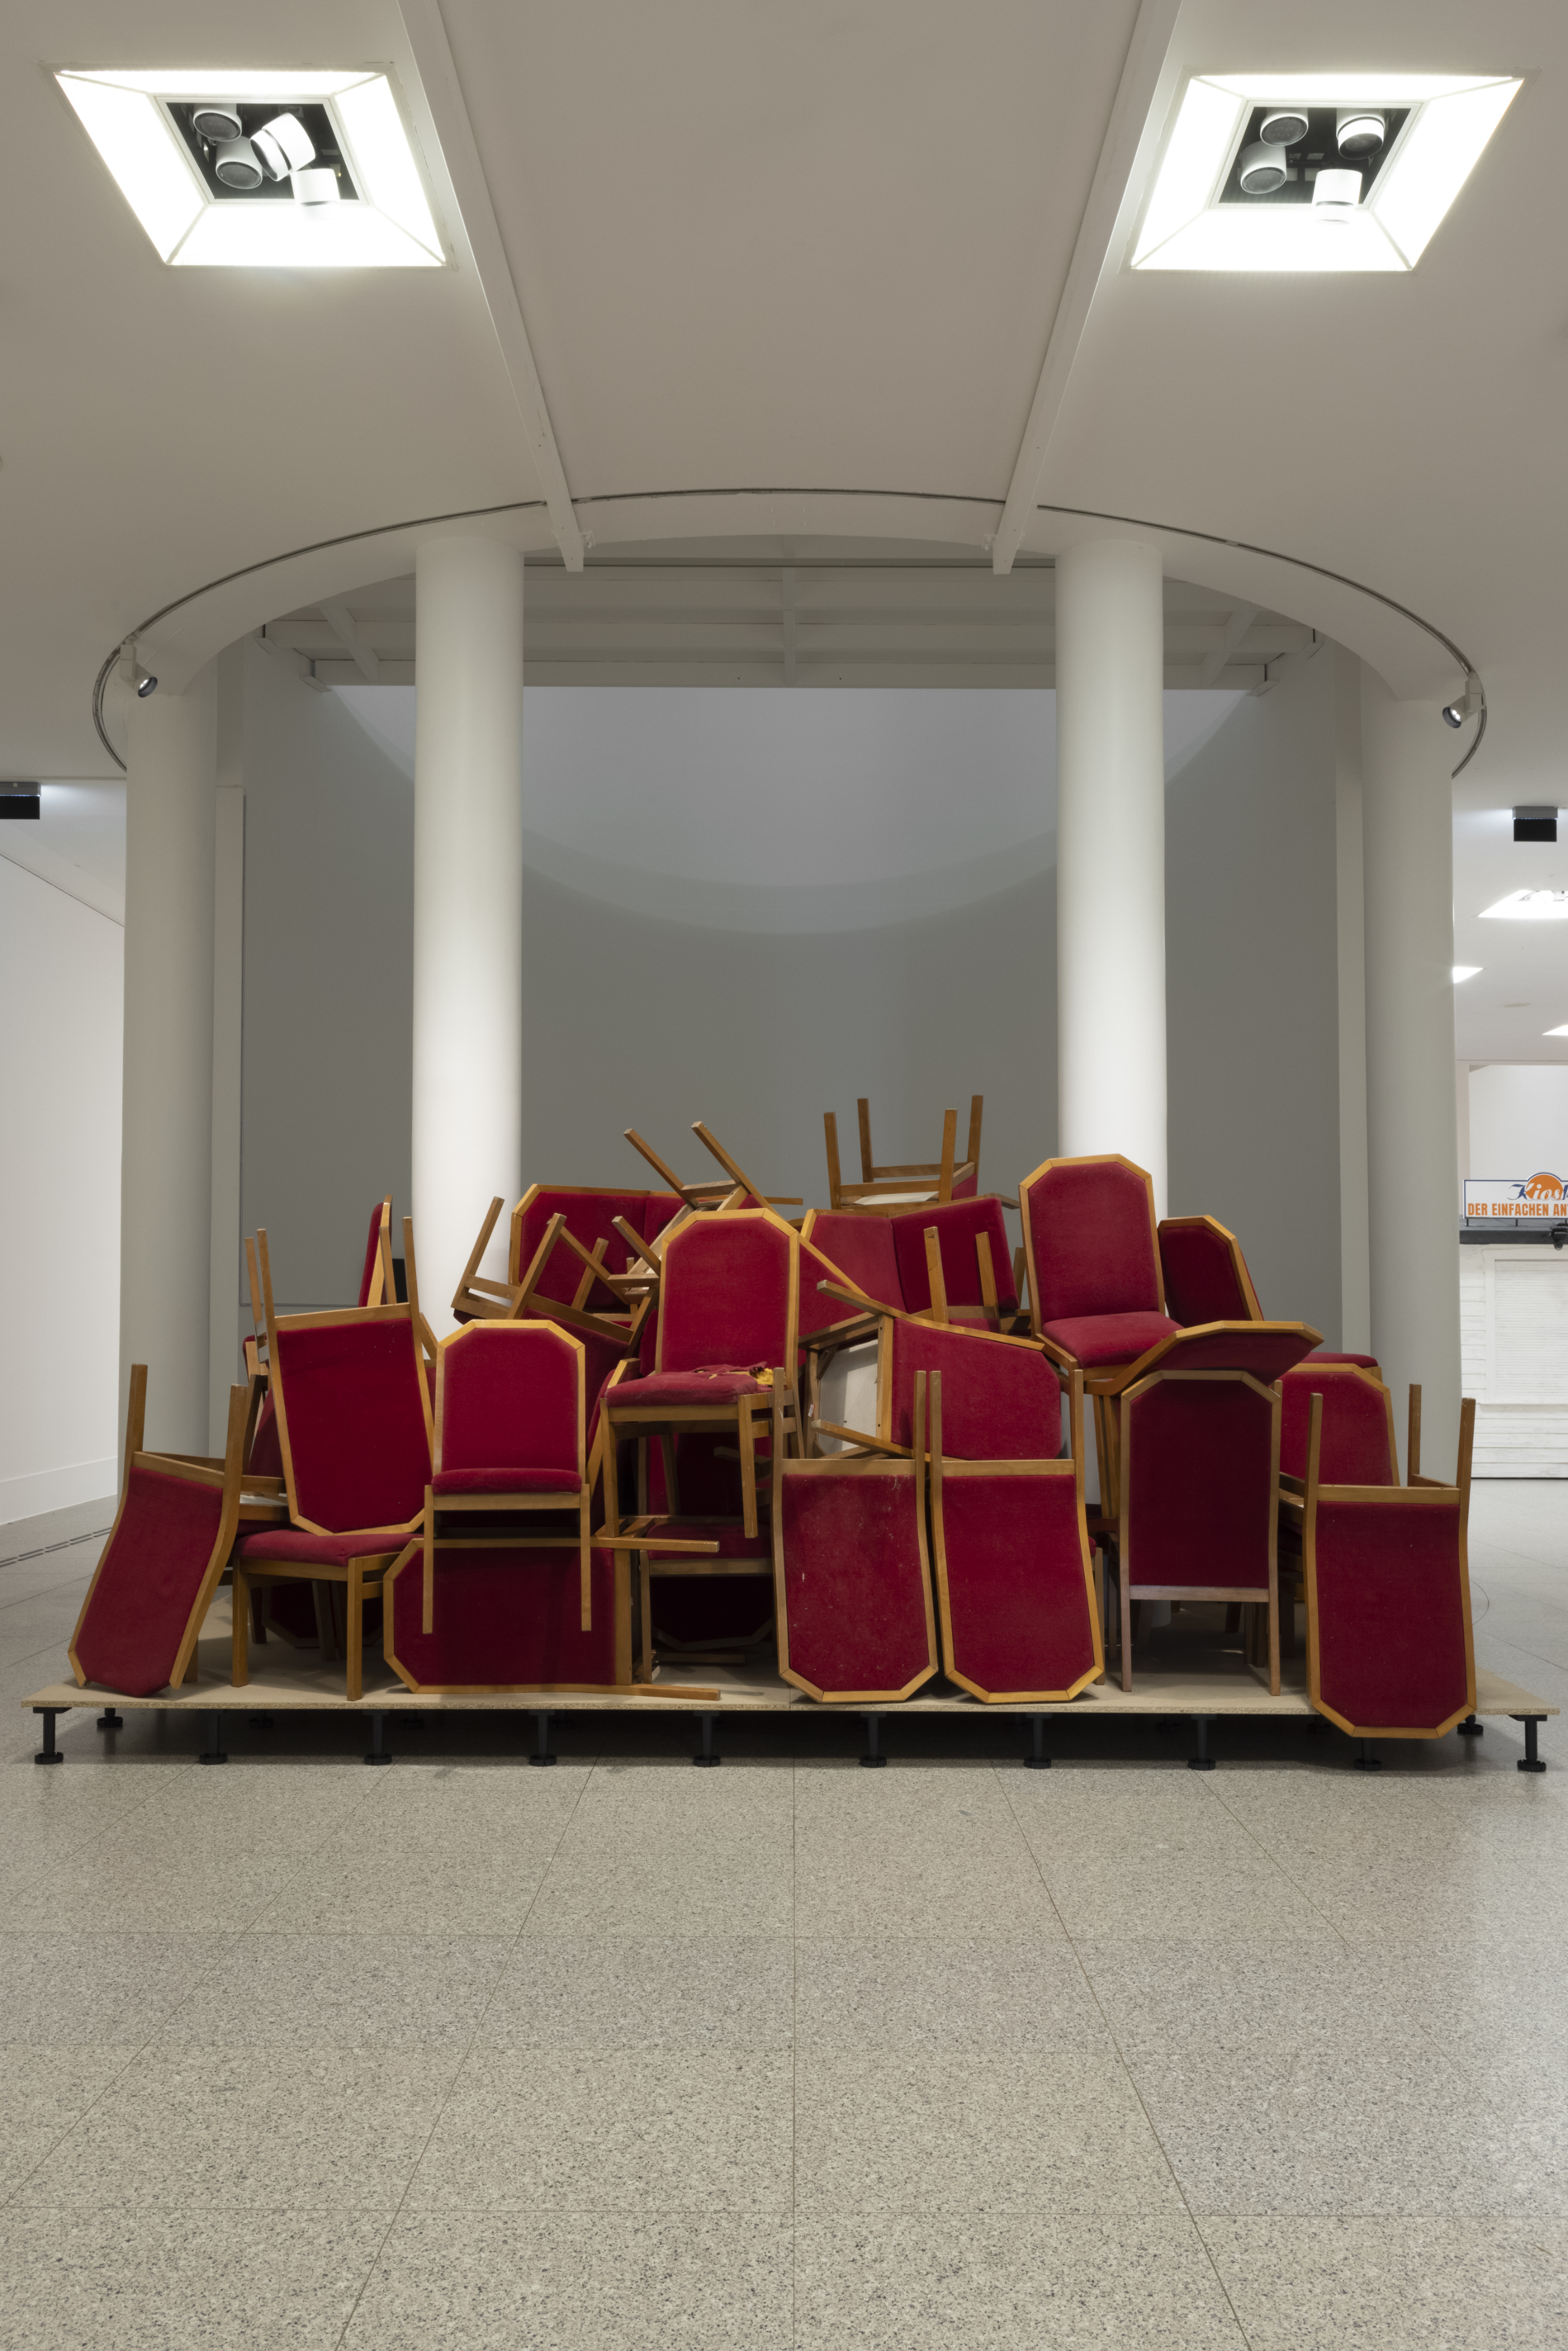 Das Kunstwerk „Sturzlage“ zeigt Stühle vom Runden Tisch aus dem Wendejahr 1989/90.